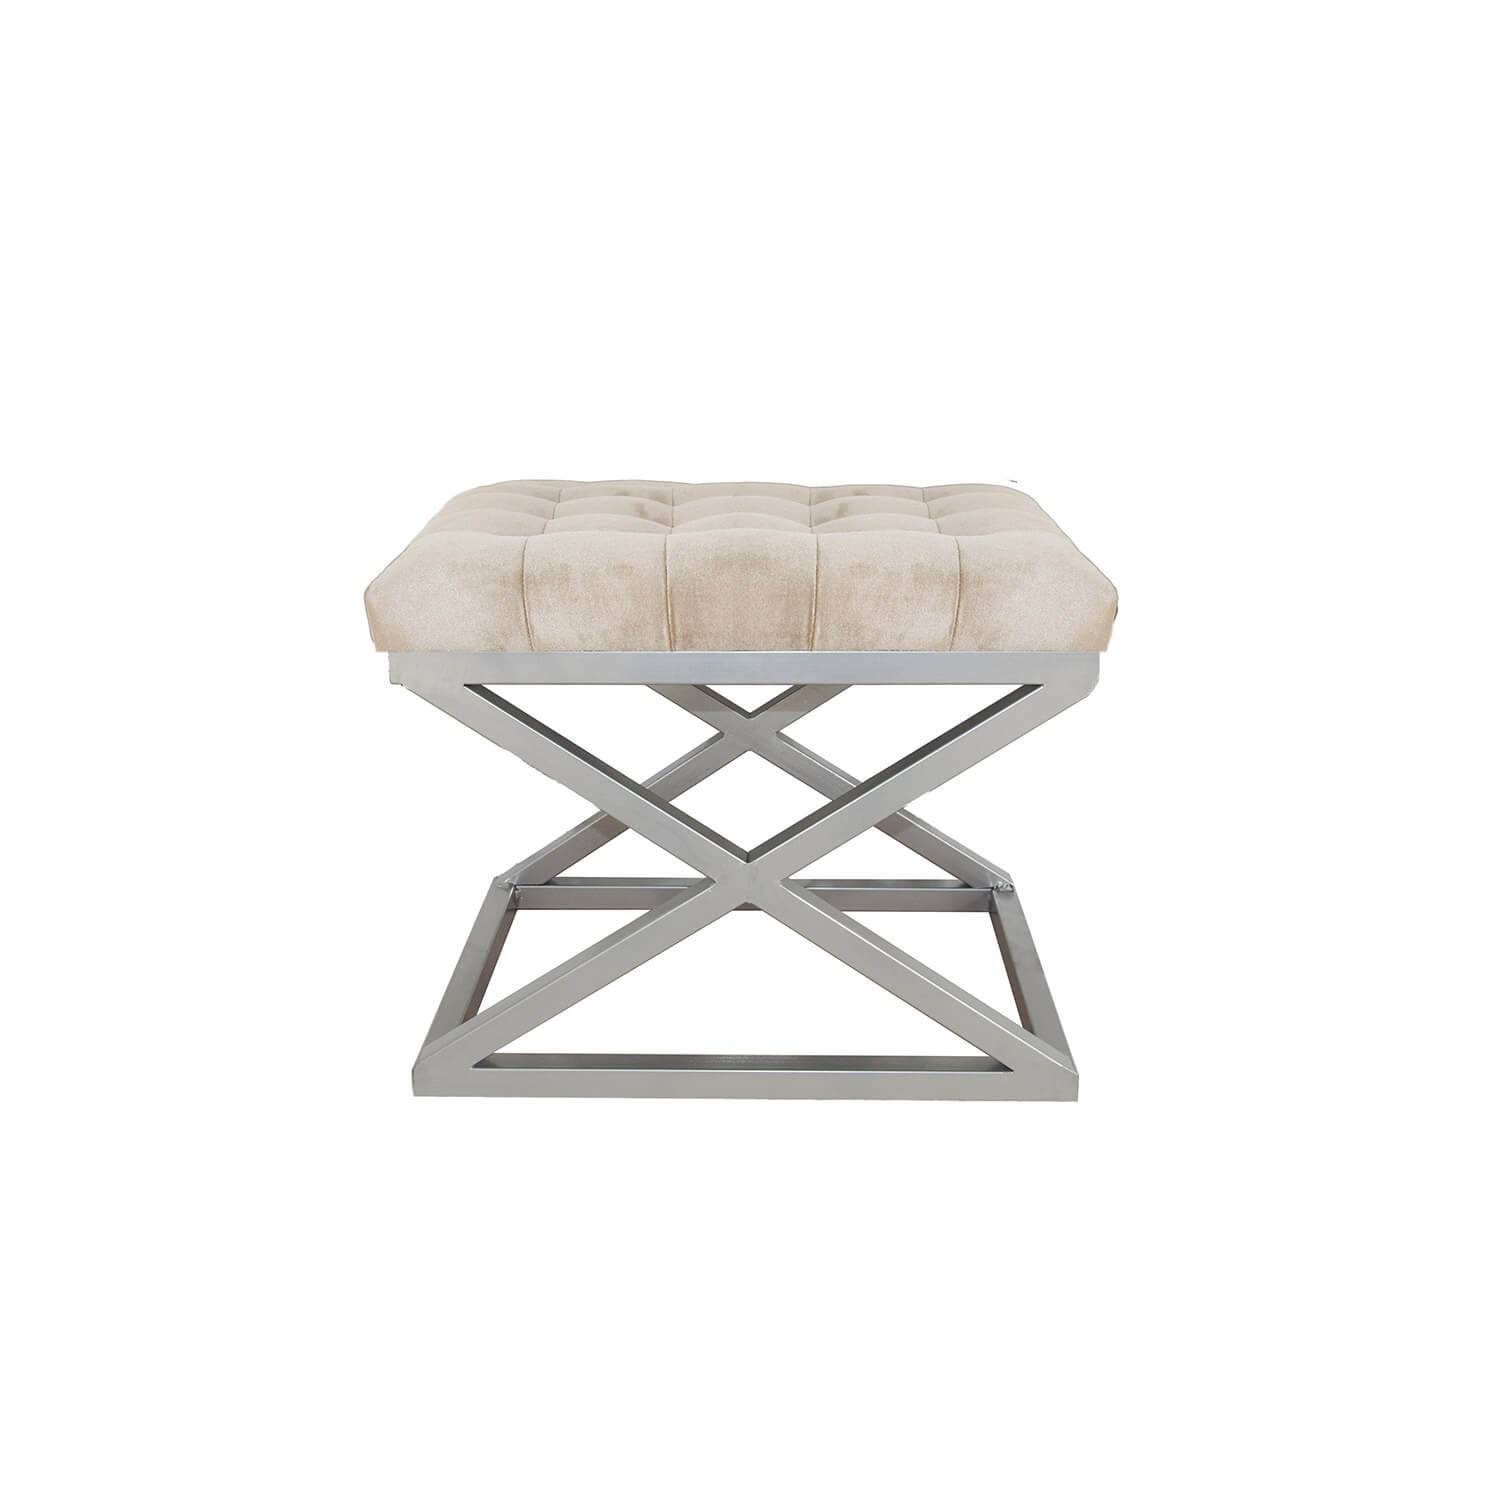 Taburete Ulad de metal plateado y terciopelo blanco crema con asiento tapizado